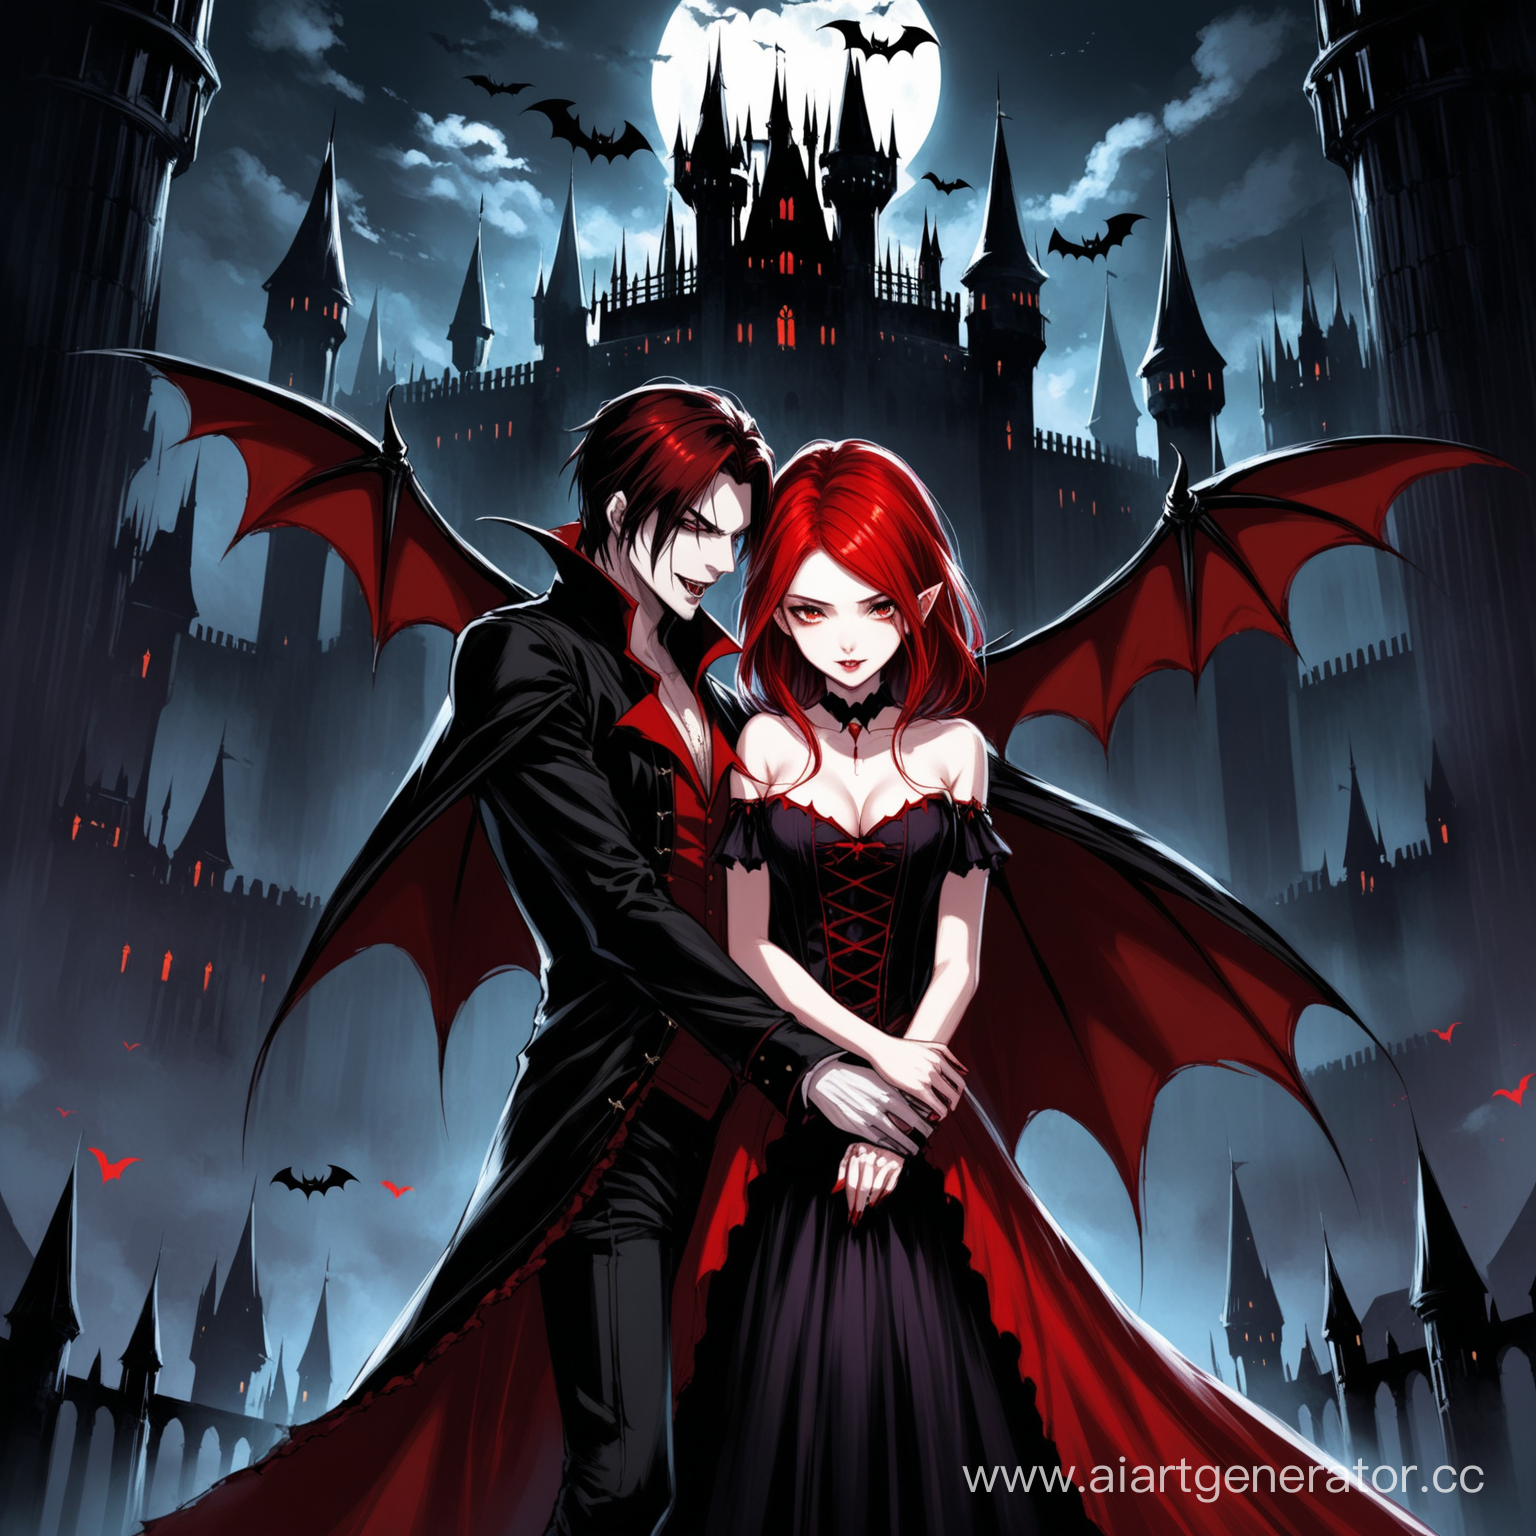 обложка для книги, фэнтези про вампиров, девушка с красными волосами стоит в темном замке, рядом вампир мужчина с черными короткими волосами